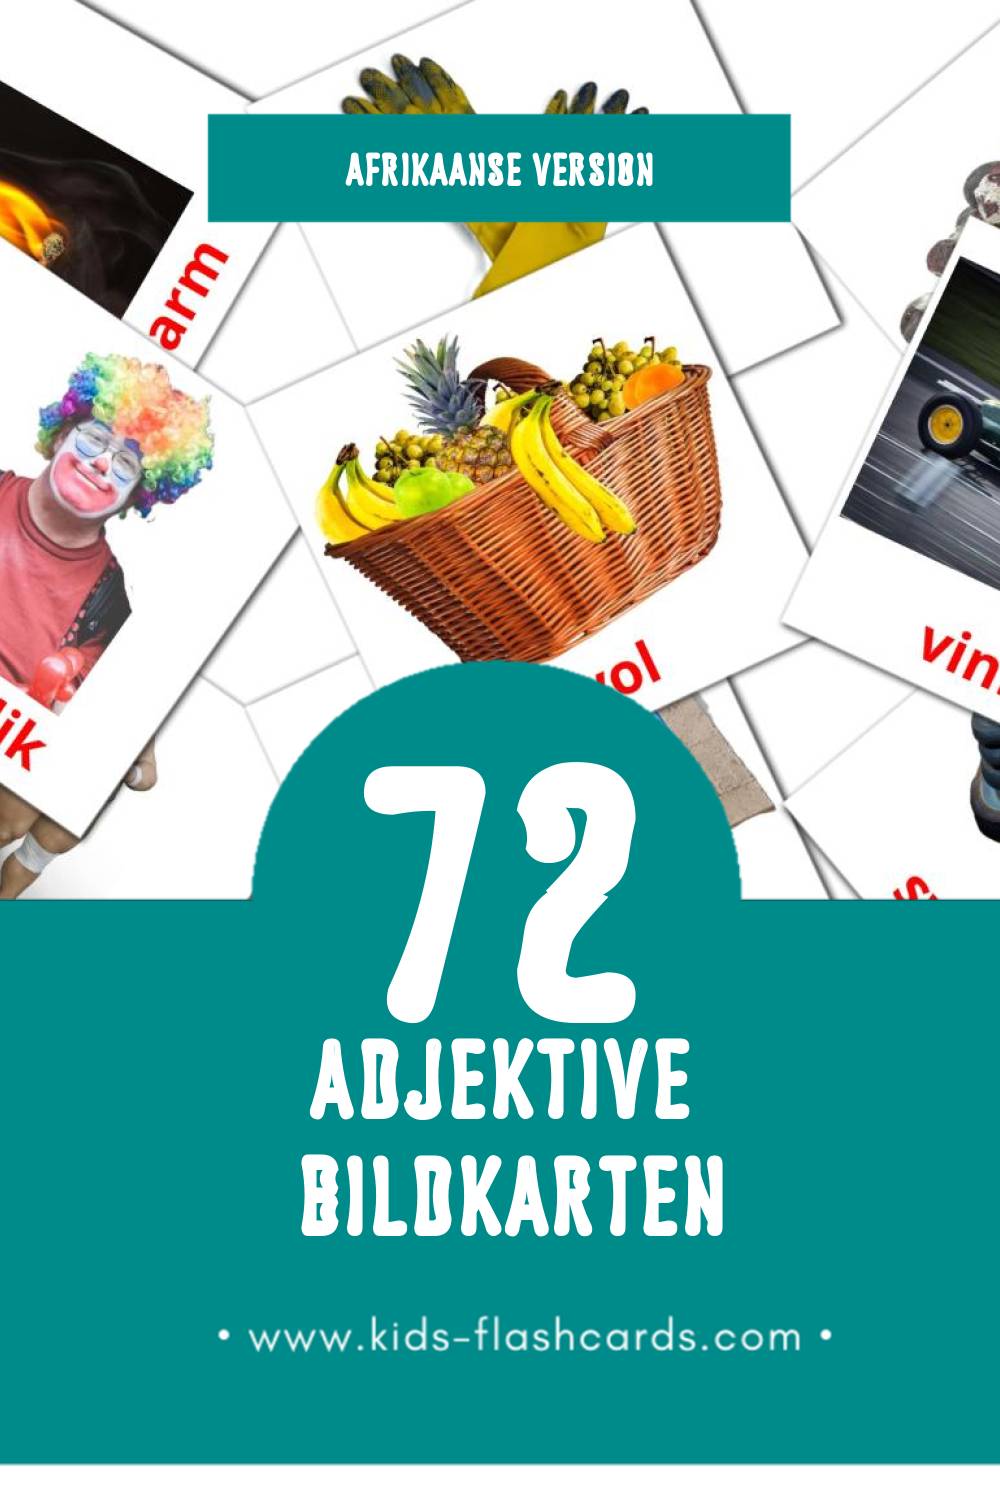 Visual Byvoeglike naamwoorde Flashcards für Kleinkinder (72 Karten in Afrikaans)